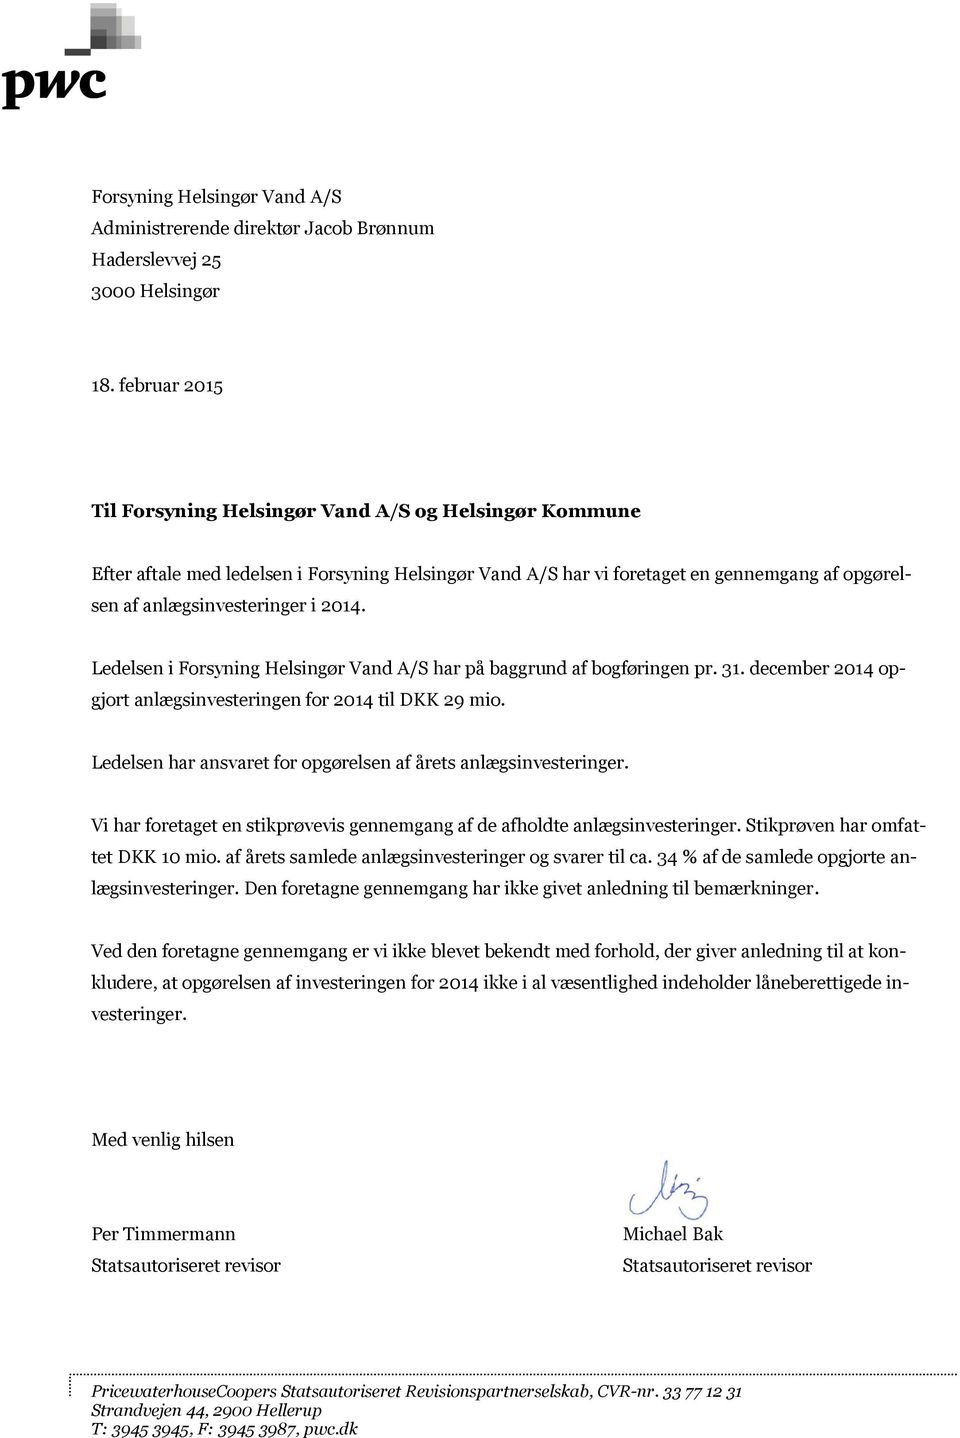 Ledelsen i Forsyning Helsingør Vand A/S har på baggrund af bogføringen pr. 31. december 2014 opgjort anlægsinvesteringen for 2014 til DKK 29 mio.